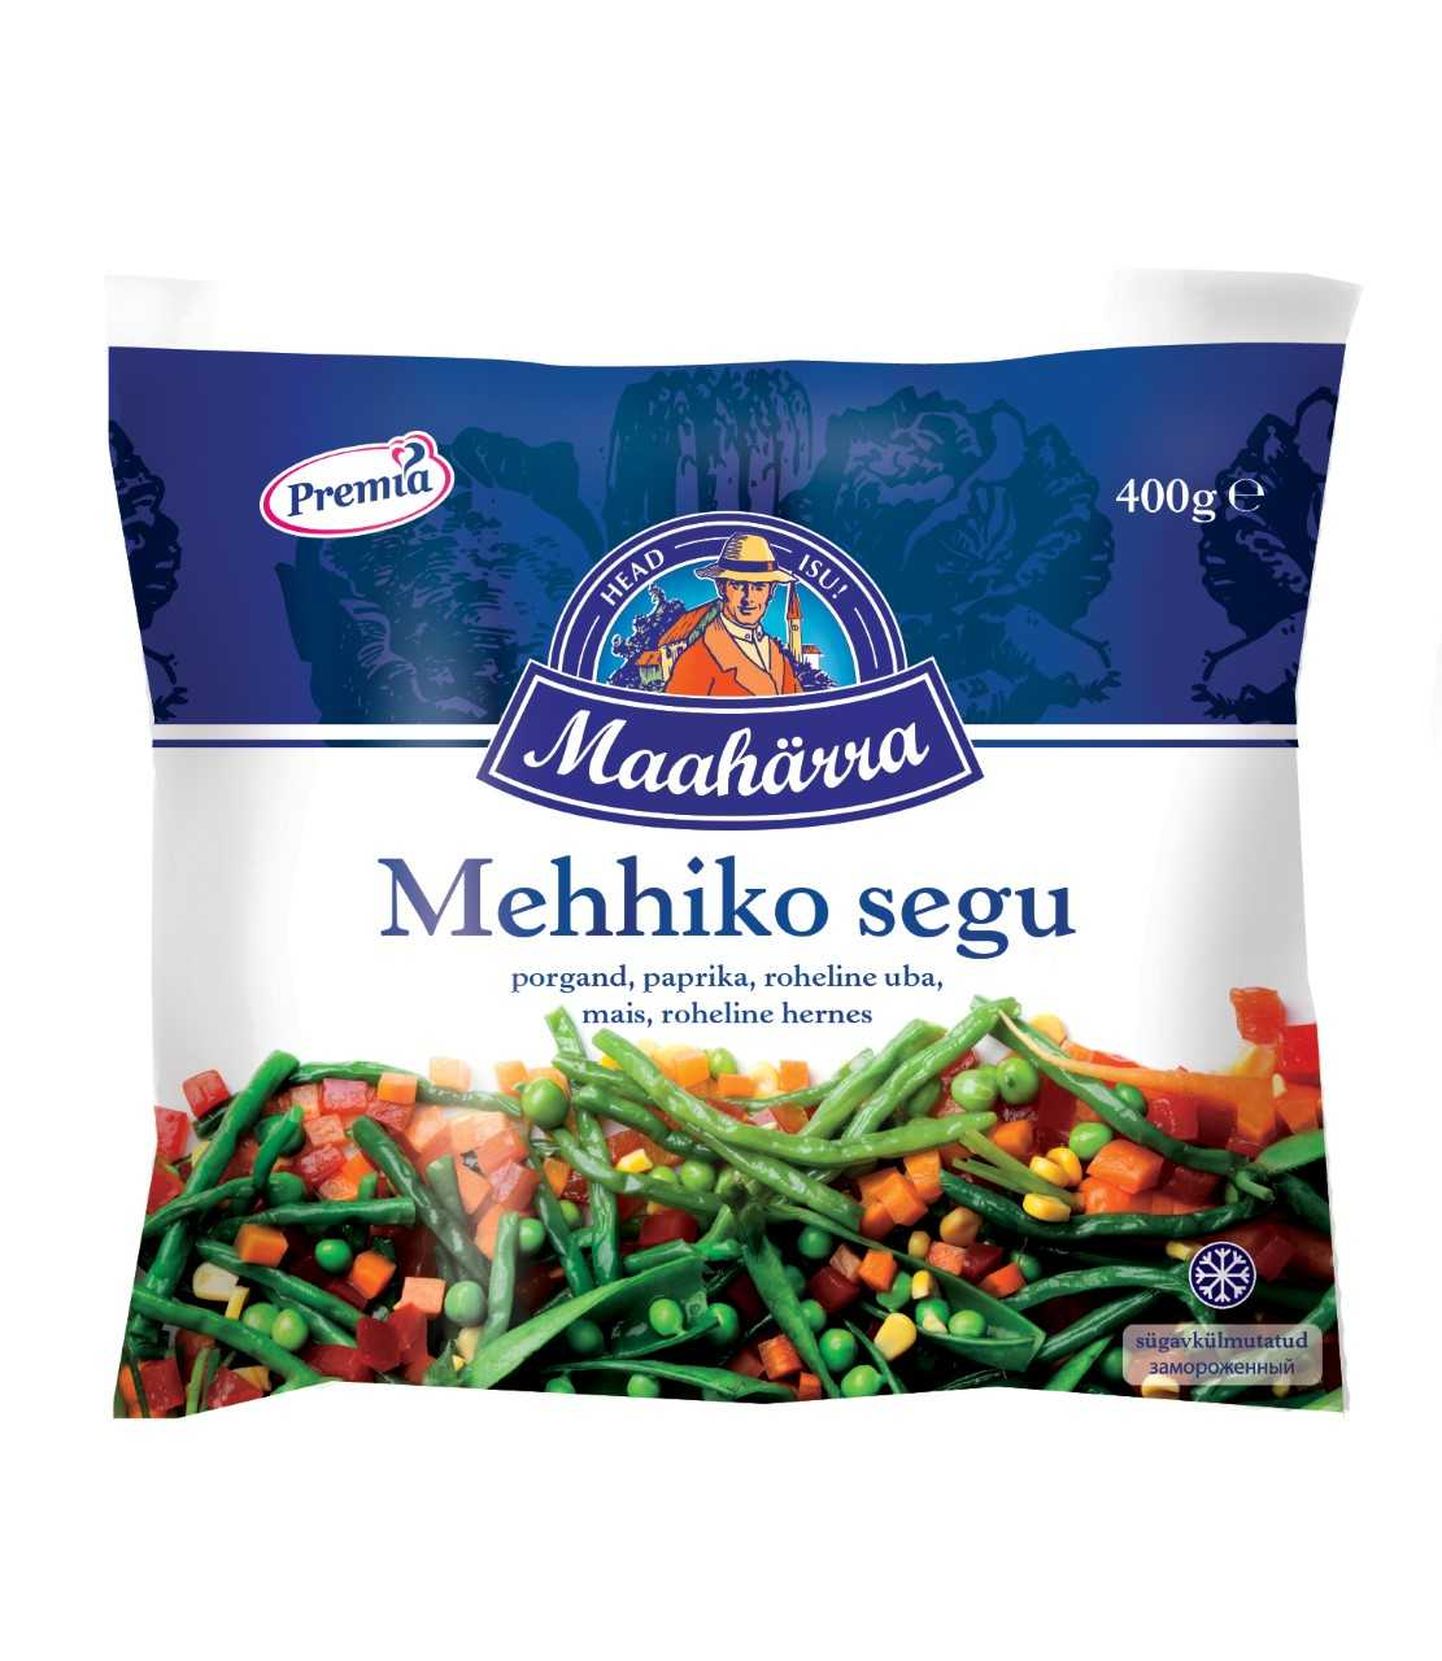 Maahärra отзывает смесь замороженных овощей из-за патогенной бактерии